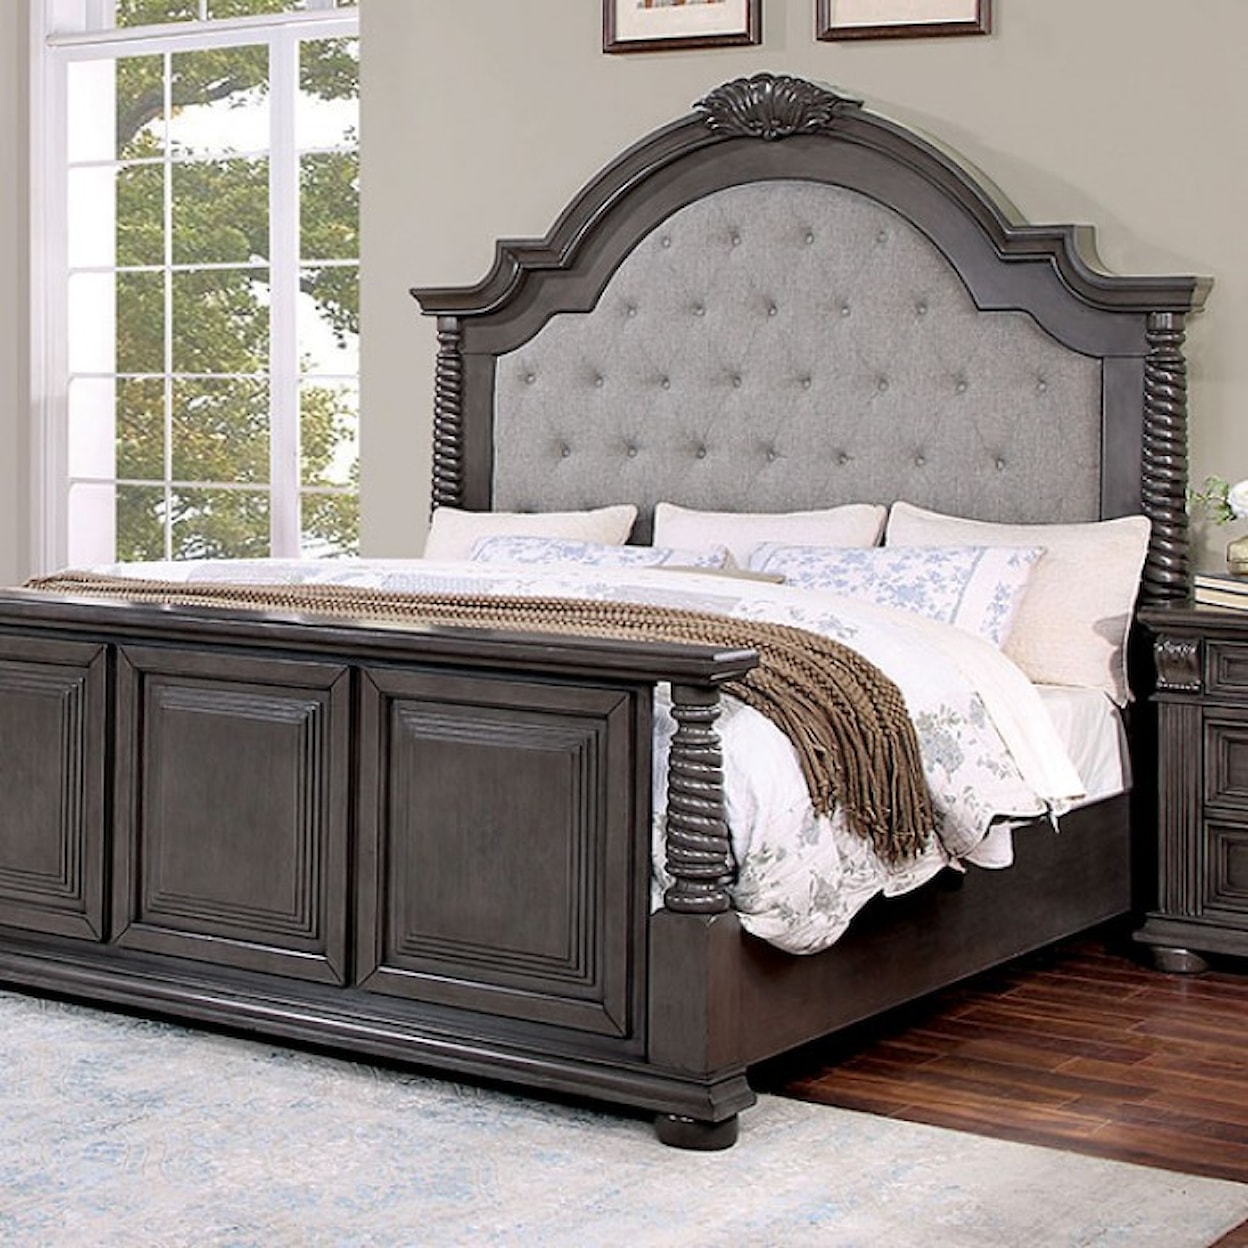 Furniture of America Esperia King Bed